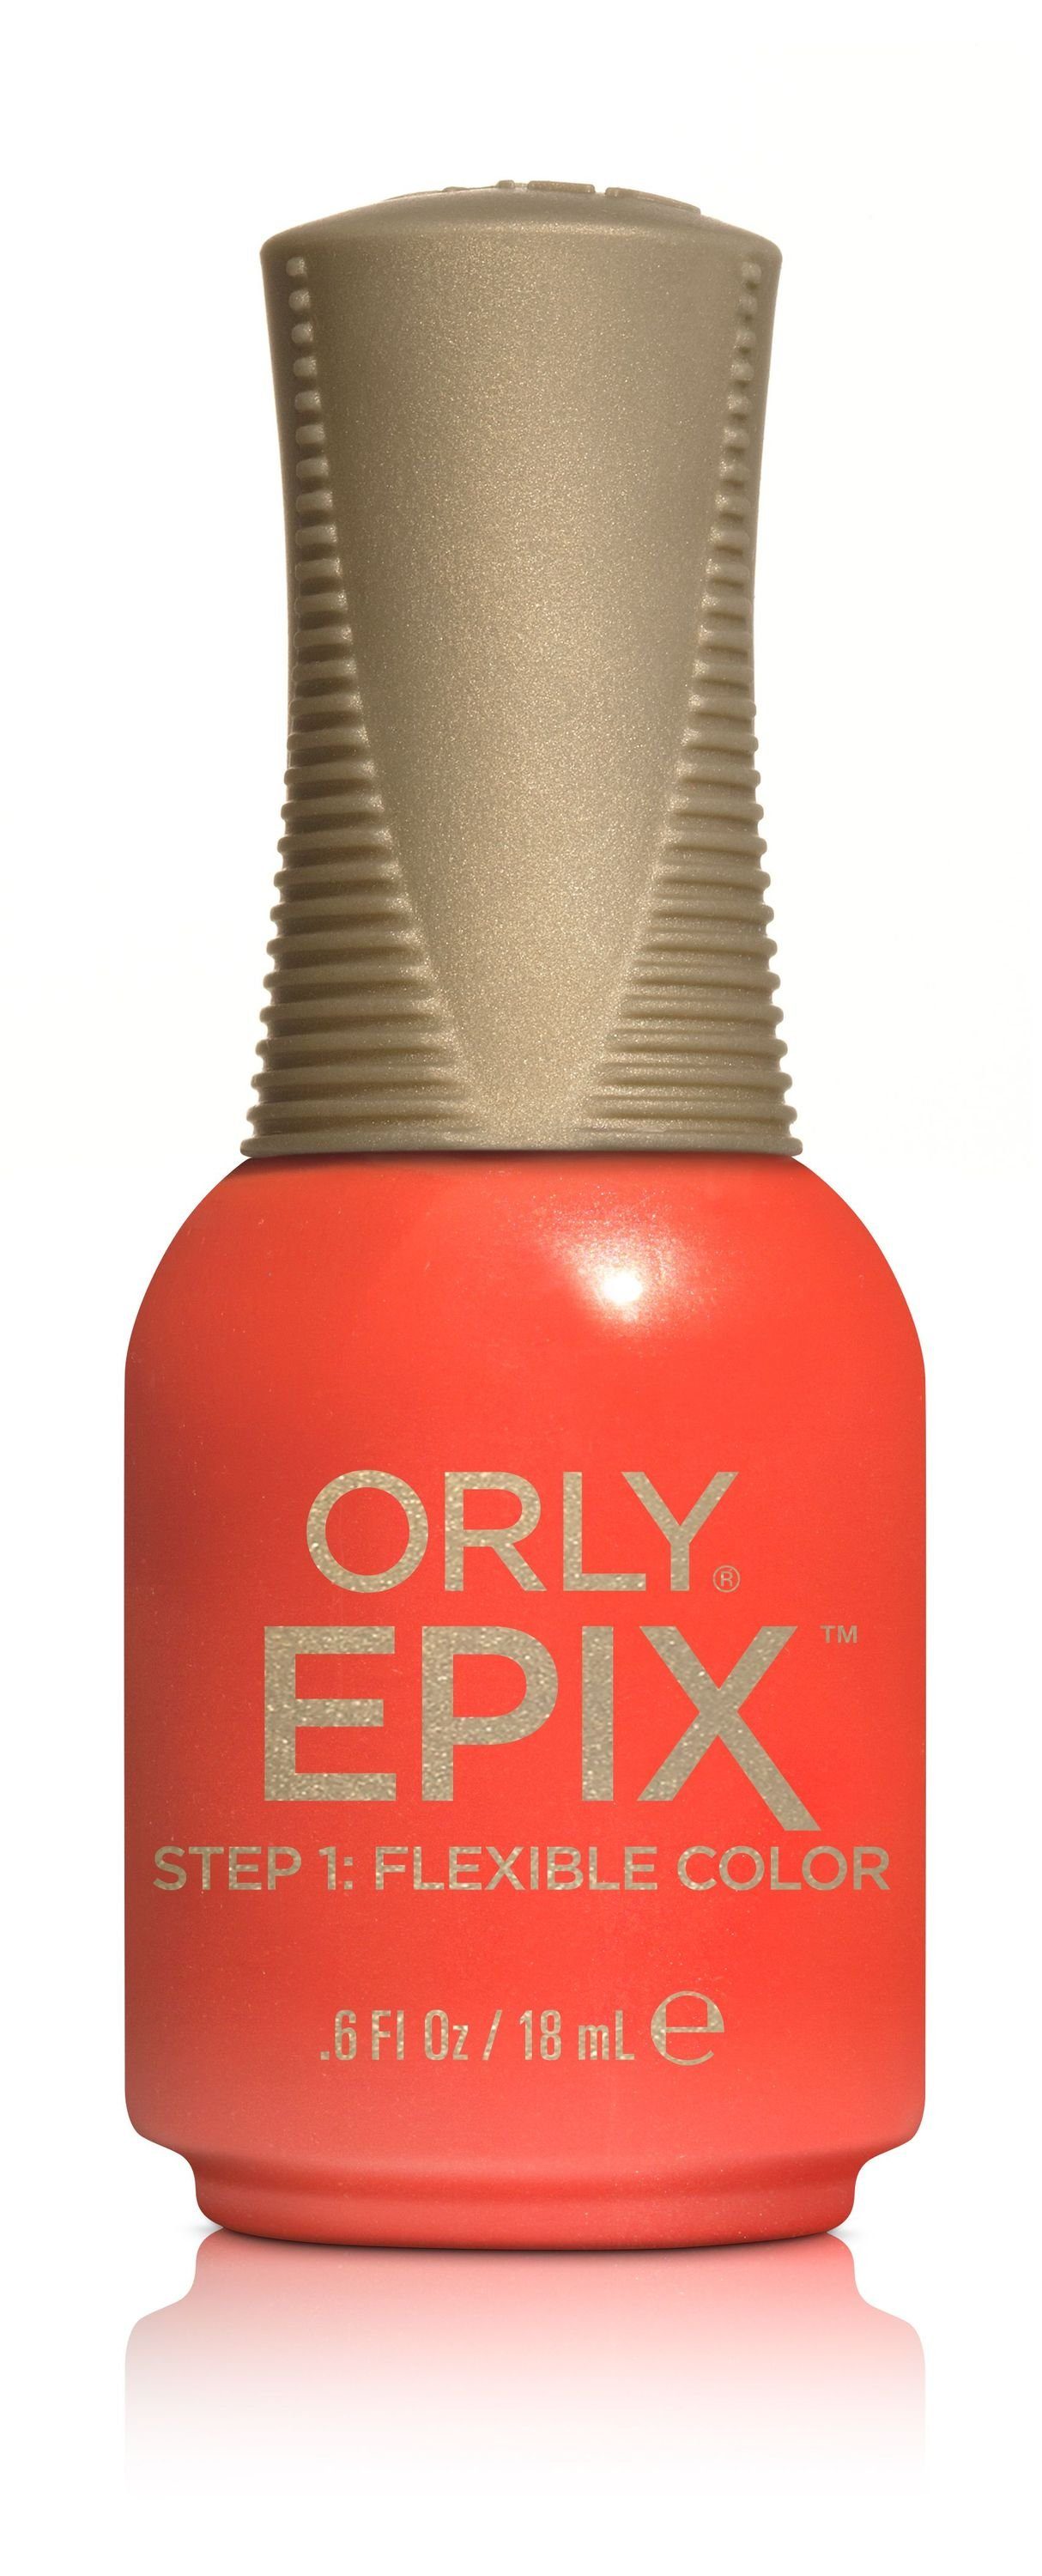 18 Improv, - Nagellack ML ORLY Color Flexible EPIX - ORLY